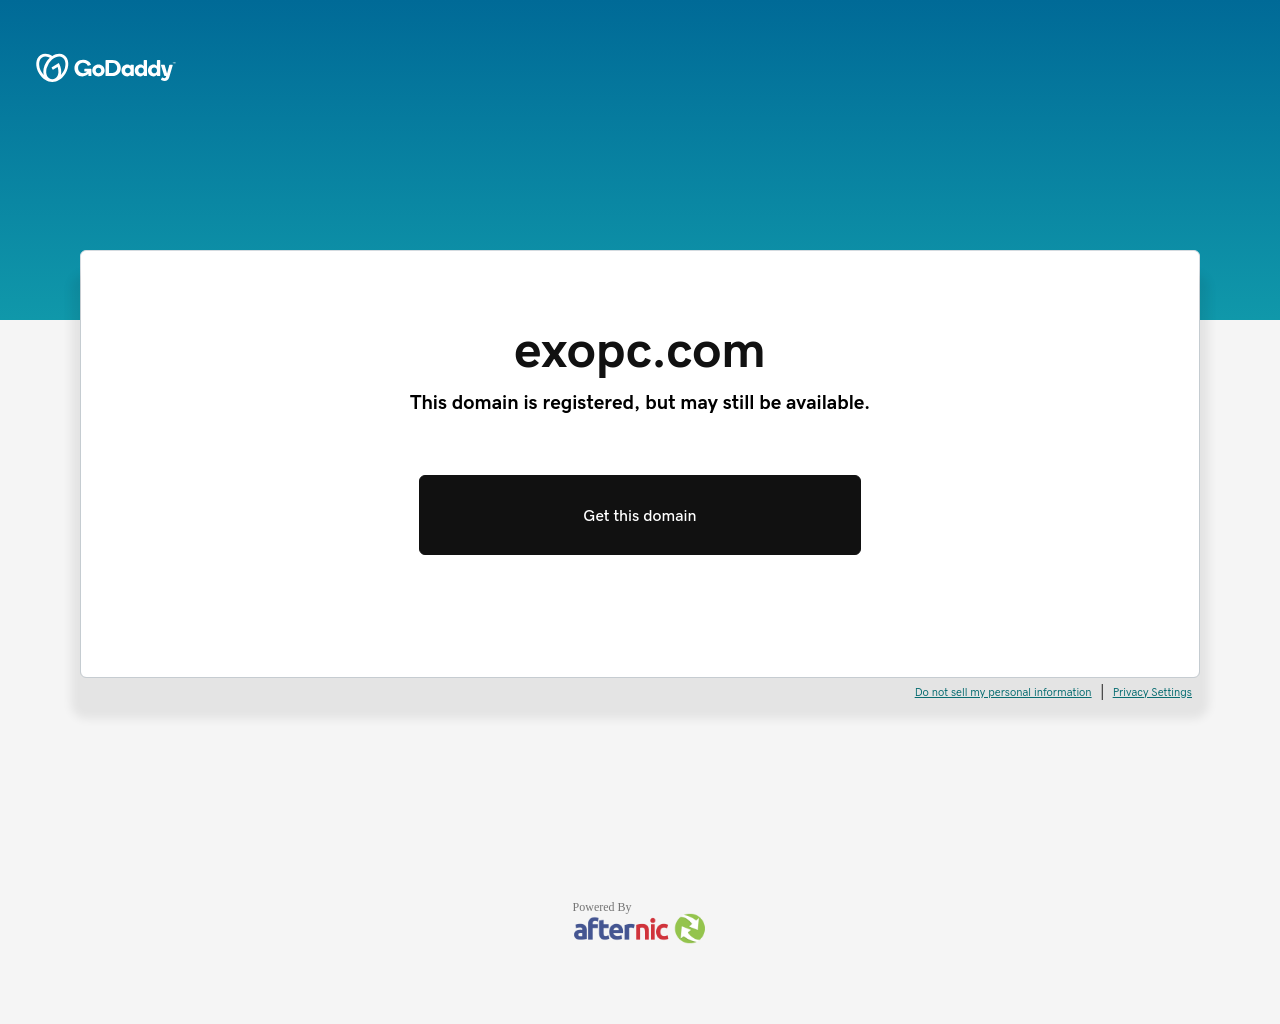 exopc.com